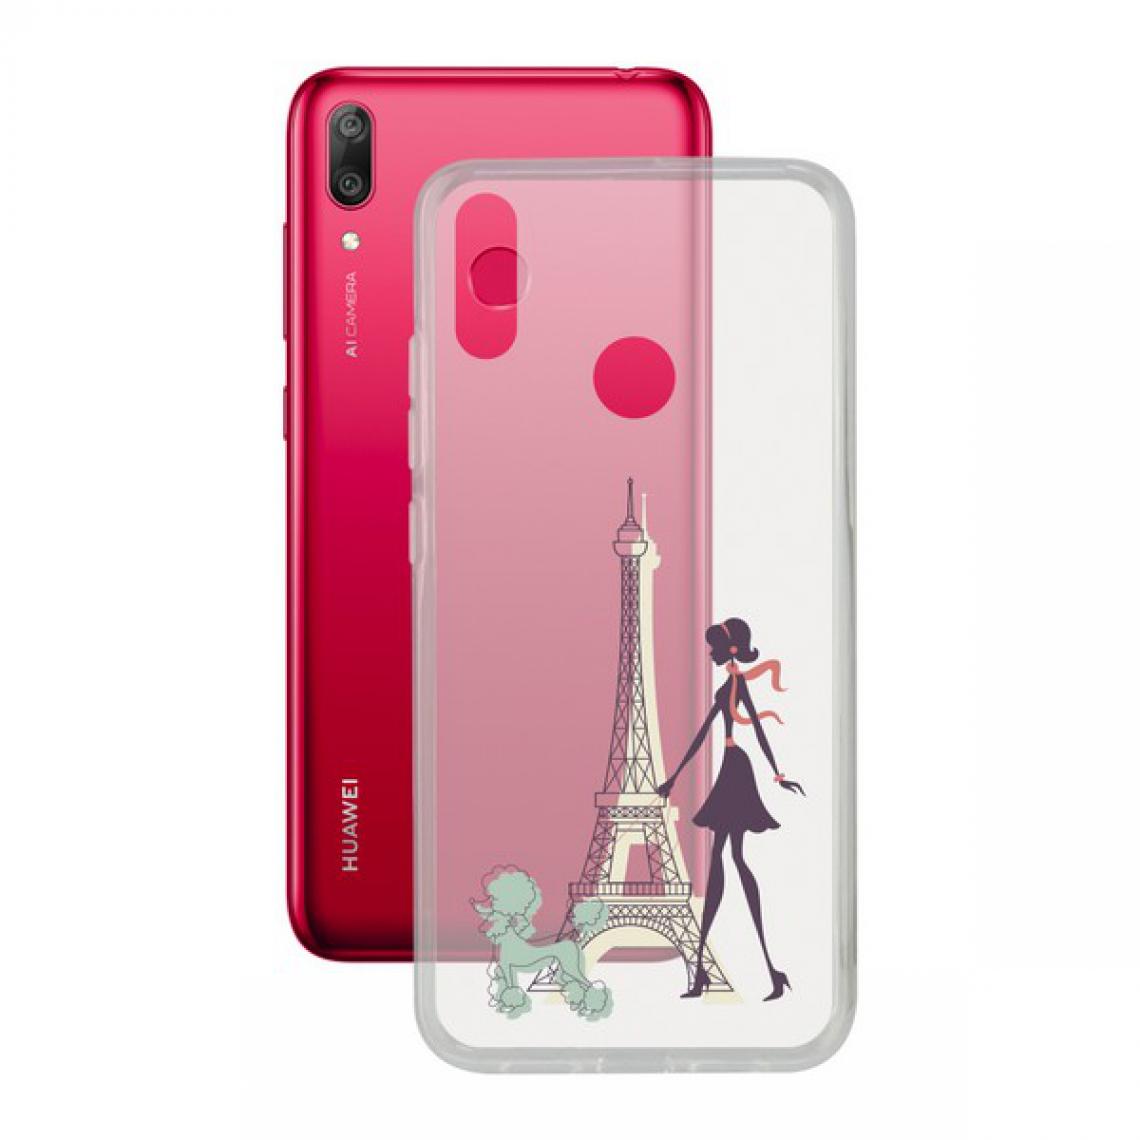 Uknow - Protection pour téléphone portable Huawei Y7 2019 Contact Flex France TPU - Coque, étui smartphone